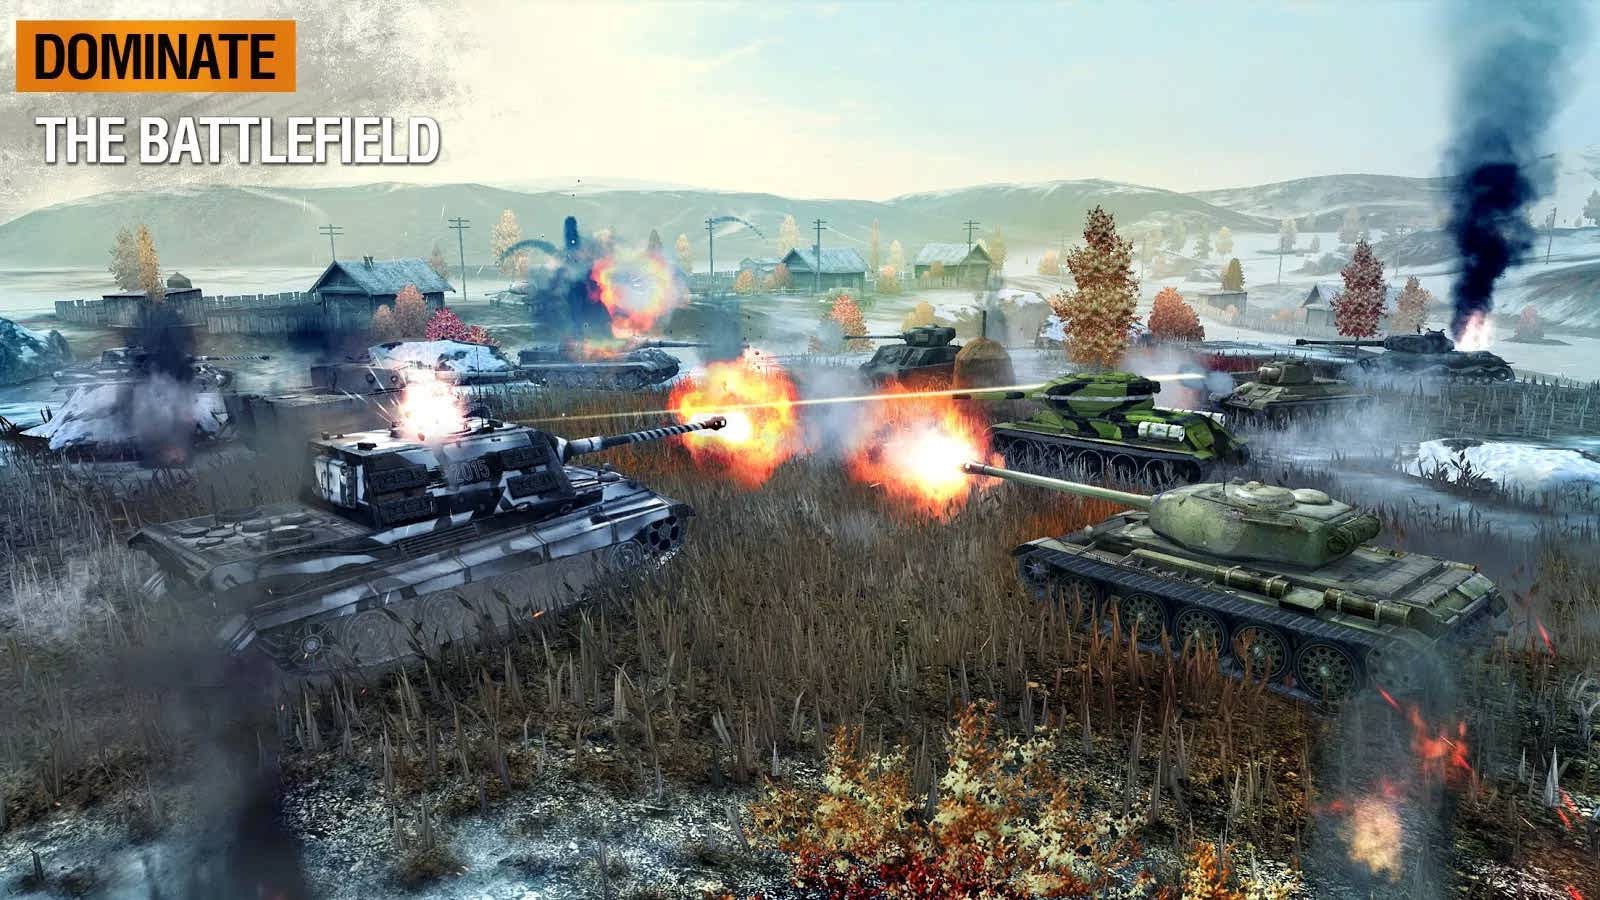 دانلود بازی نبرد تانک ها برای اندروید World of Tanks Blitz